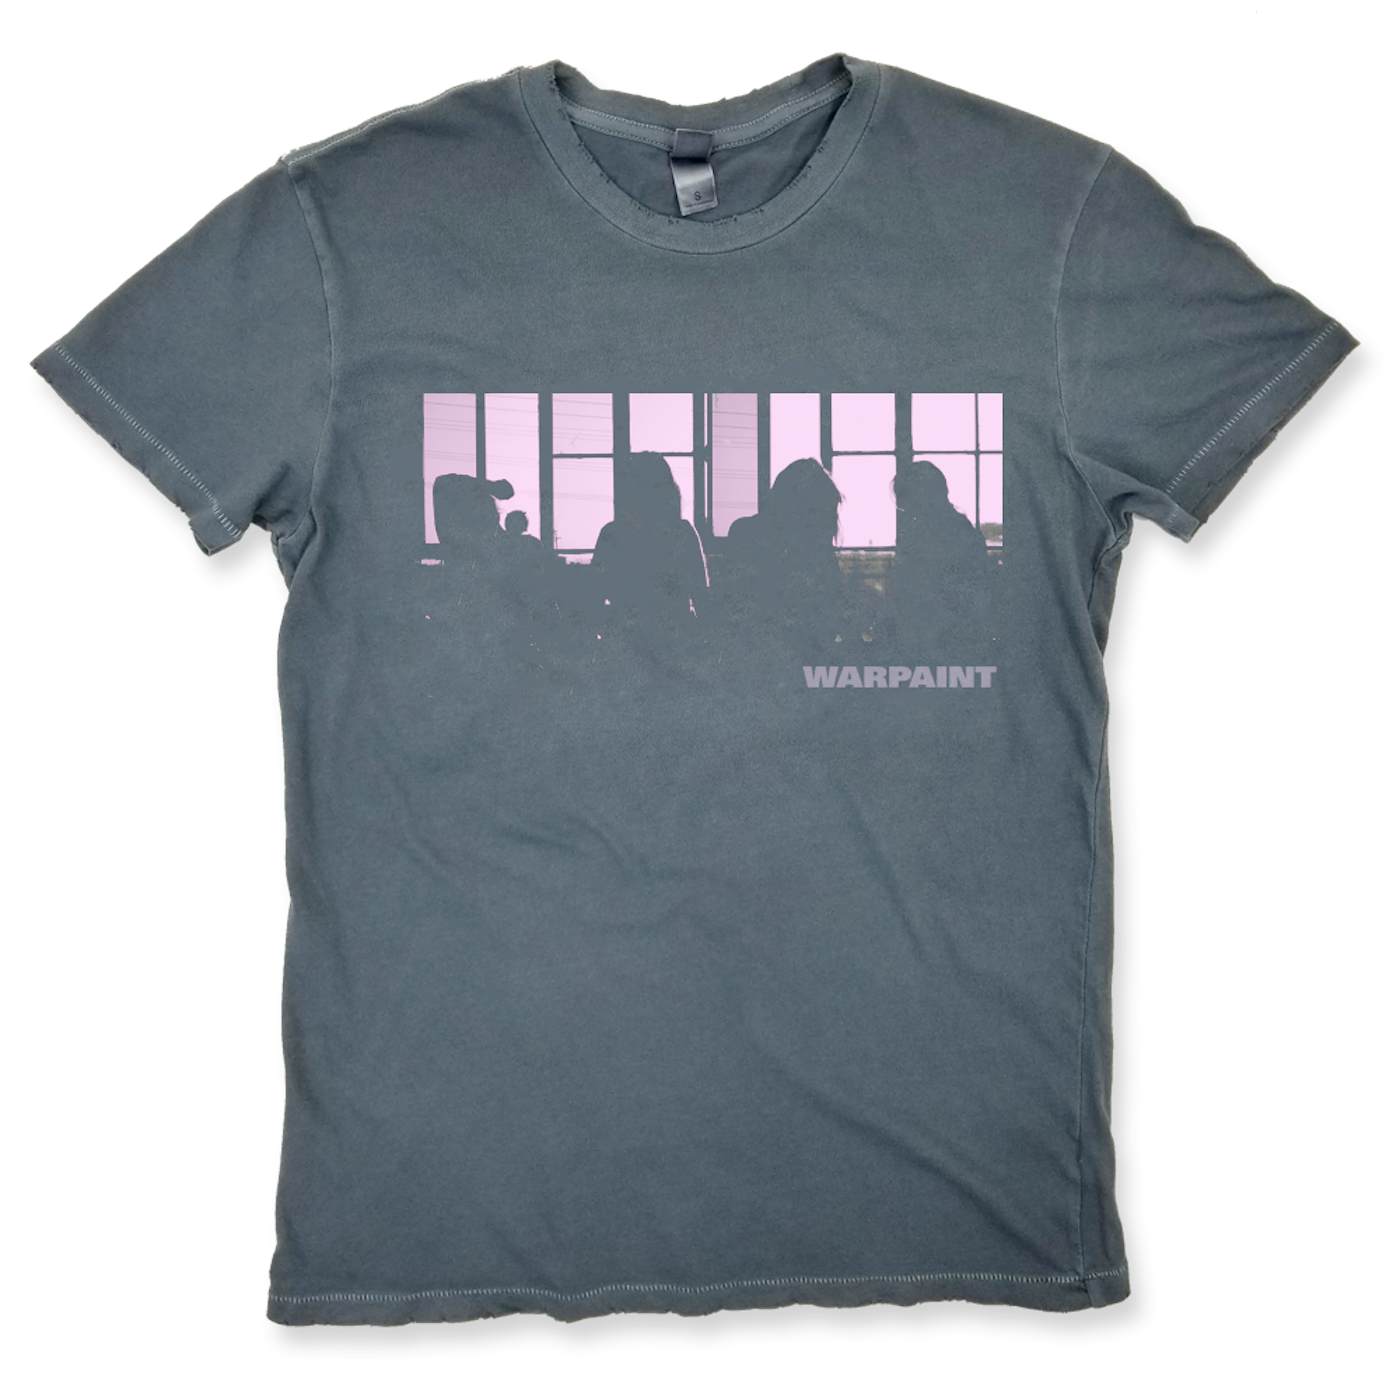 Warpaint Heads Up Album Cover T-shirt